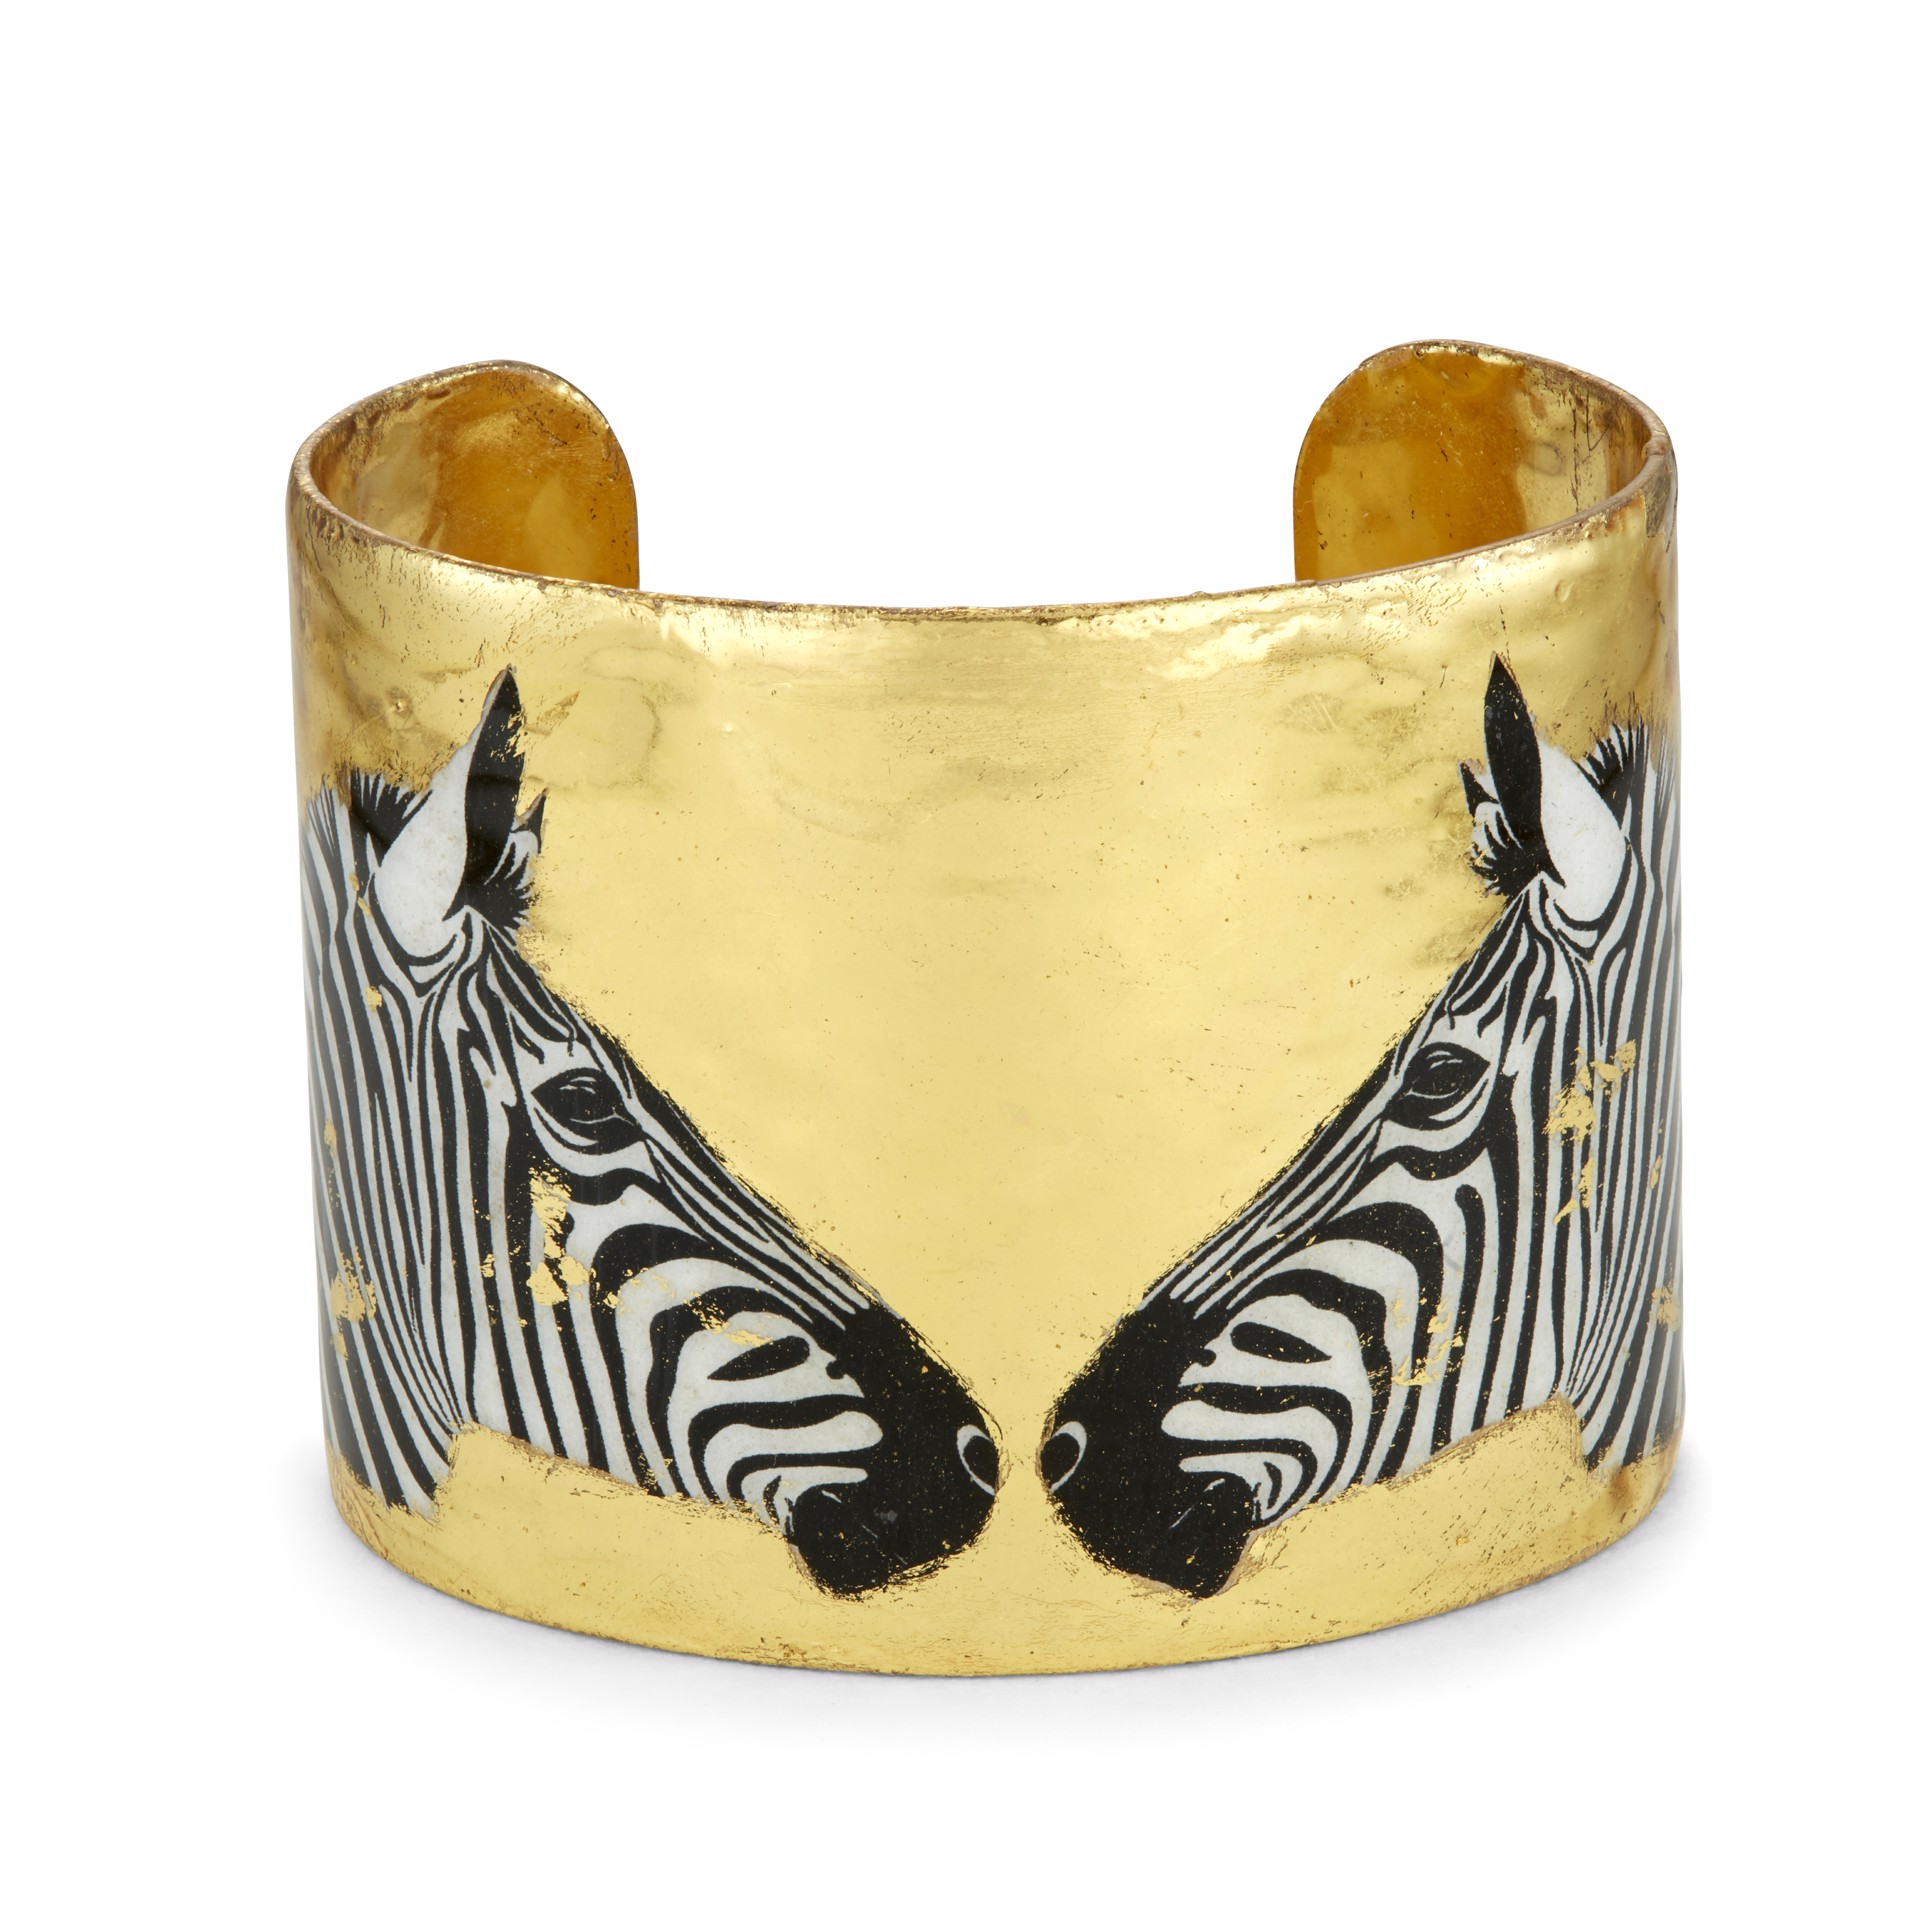 4 Zebras Cuff - 2" Gold by Evocateur